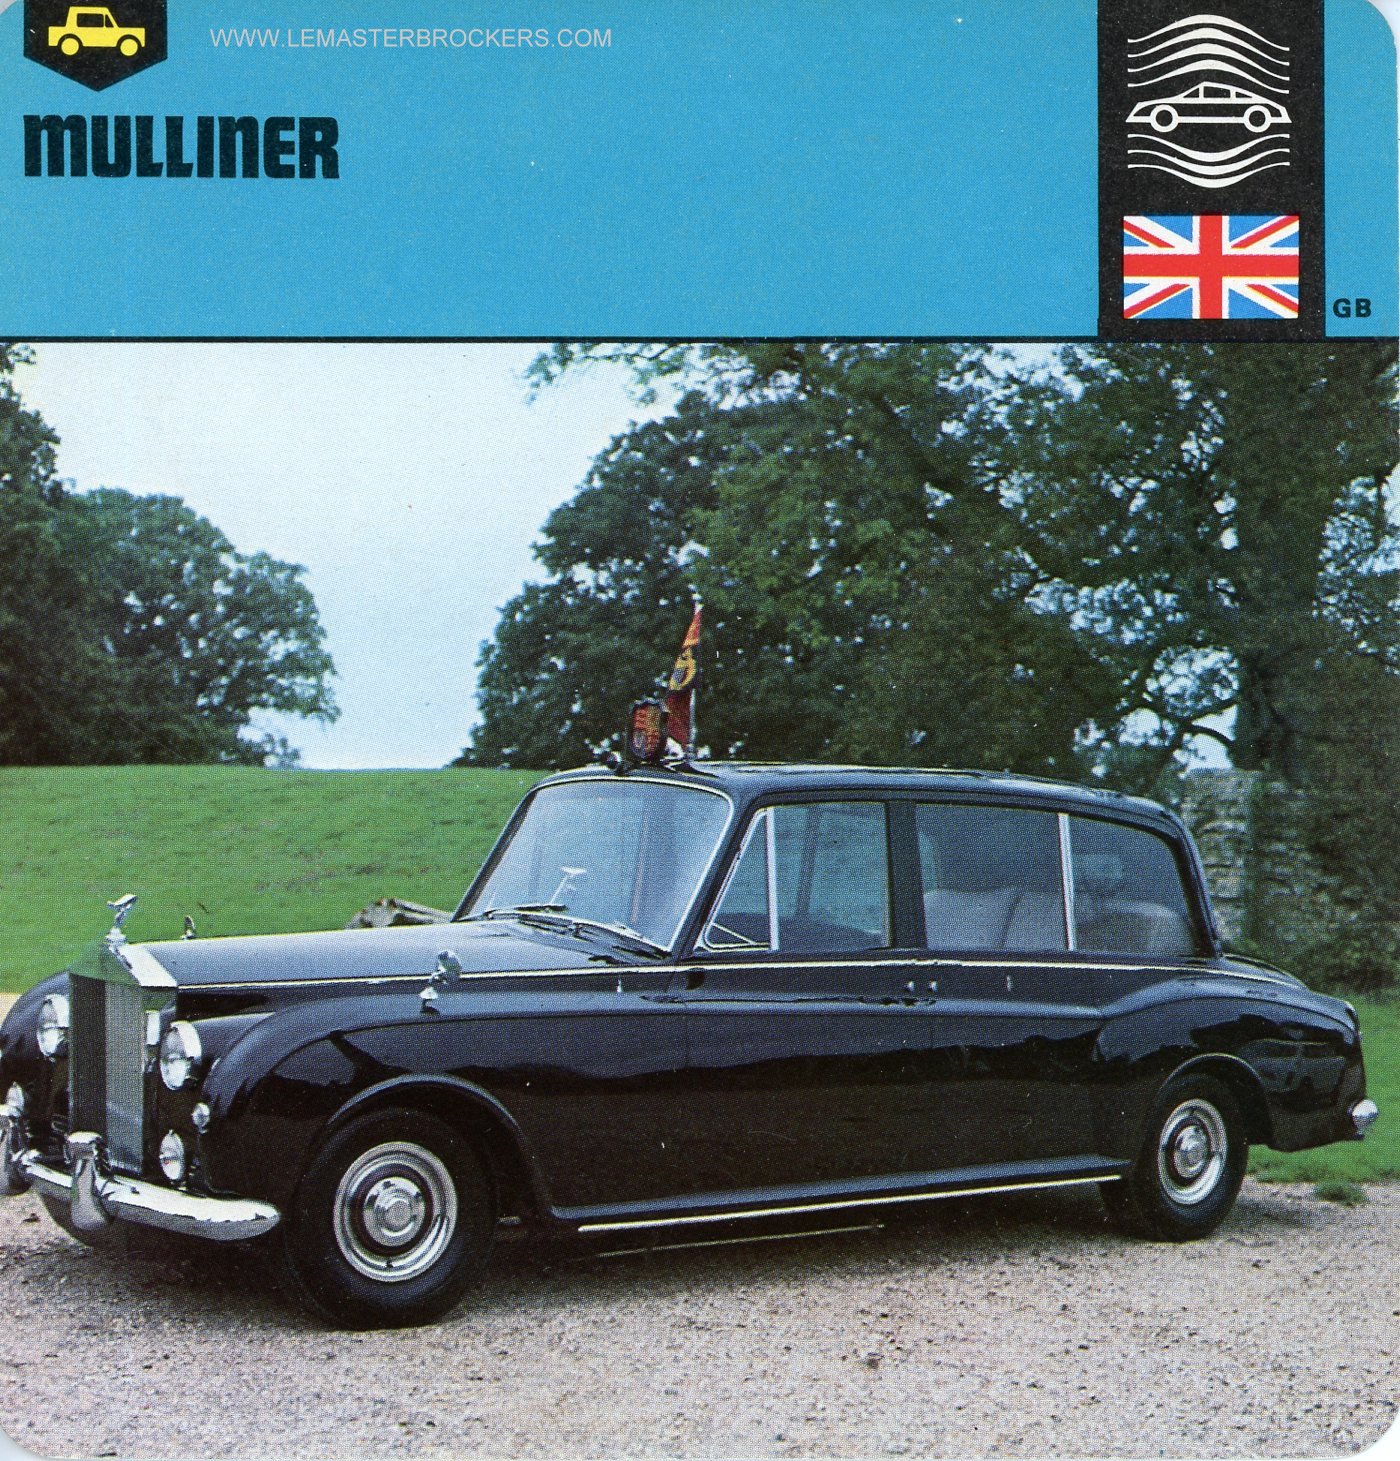 FICHE AUTO MULLINER - ILLUSTRATION VOITURE QUI A APPARTENU ELISABETH 2 REINE ANGLETERRE 1961